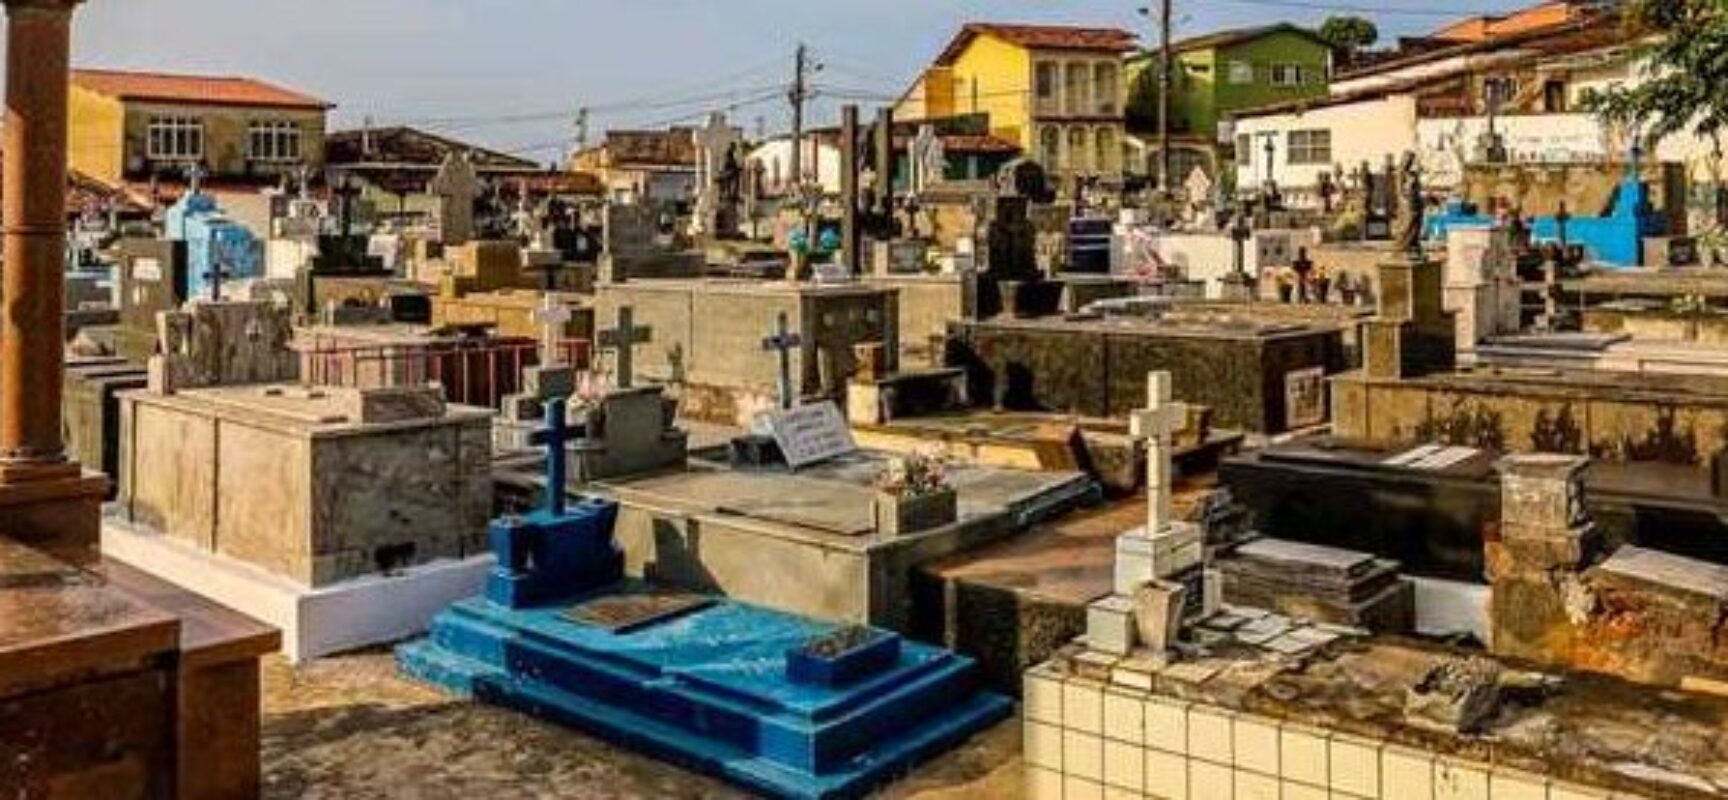 Prefeitura de Ilhéus garante regularidade dos serviços prestados em cemitérios da cidade